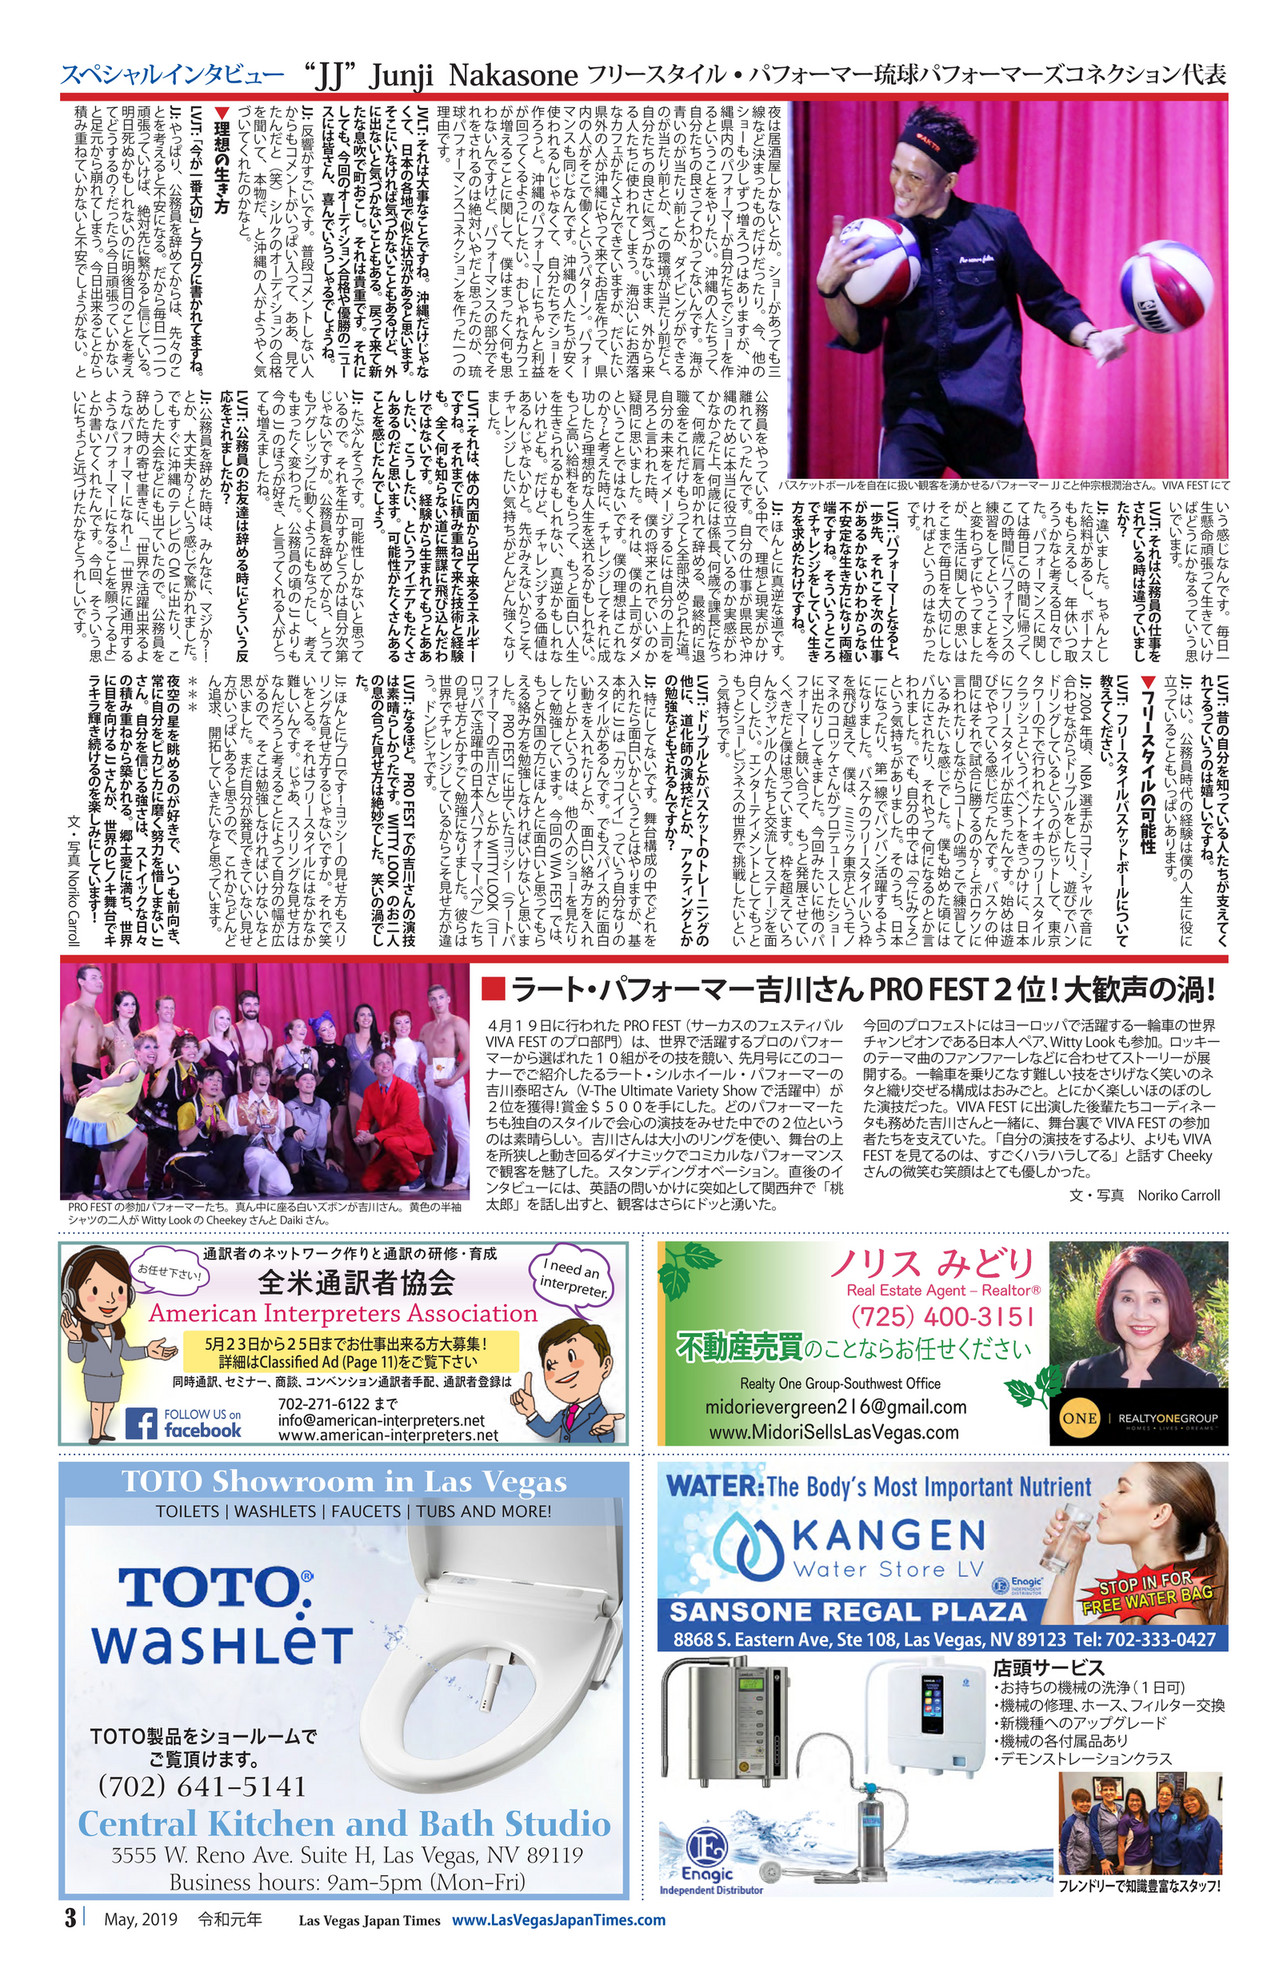 Las Vegas Japan Times Lvjt19 05 ページ 2 3